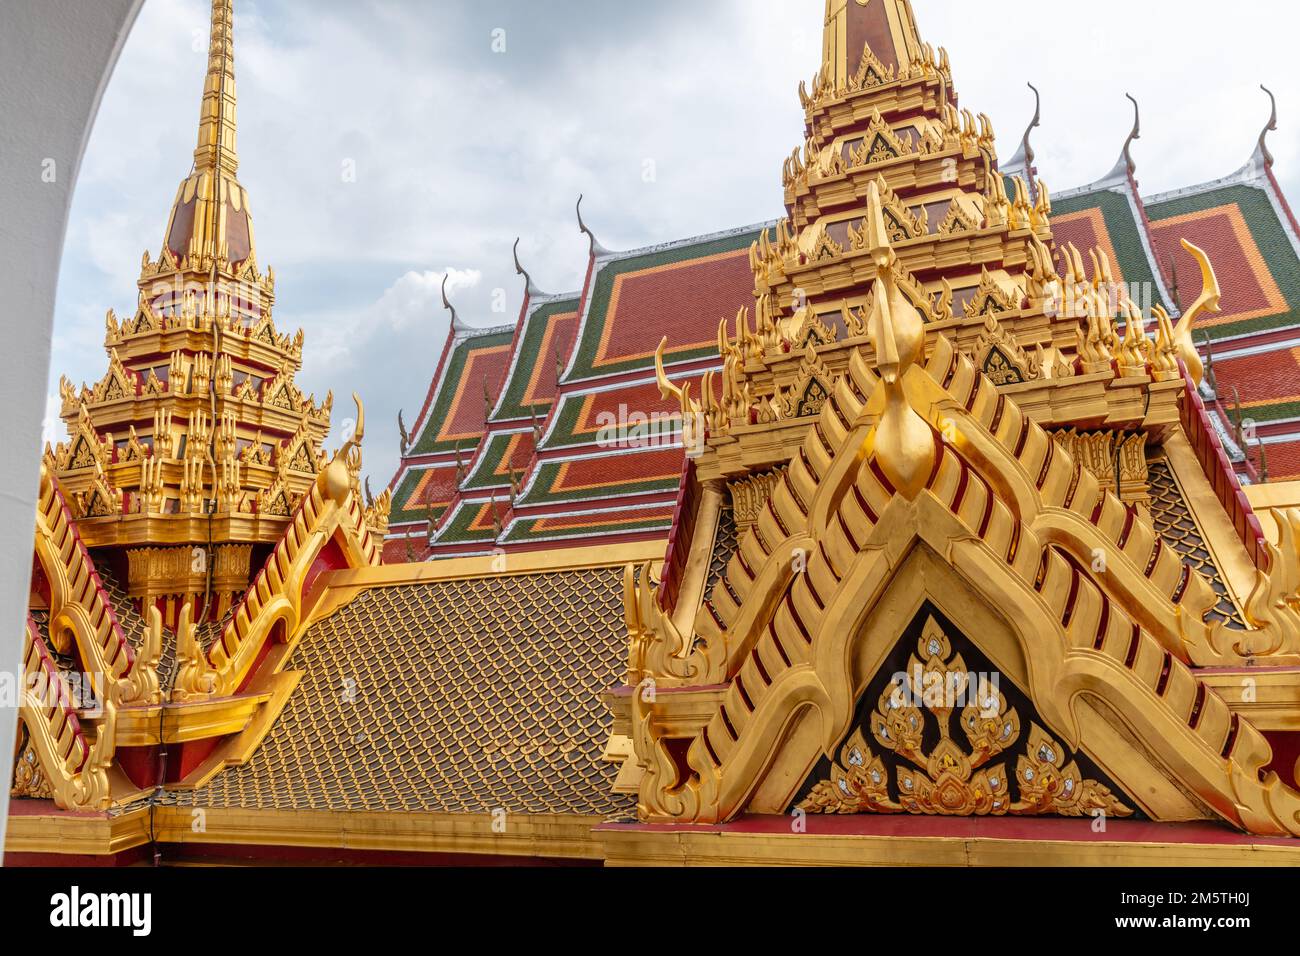 Clochers de Loha Prasat, chedi de Wat Ratchanatdaram Woravihara (Temple de la nièce royale) - Temple bouddhiste thaïlandais à Bangkok, Thaïlande. Banque D'Images